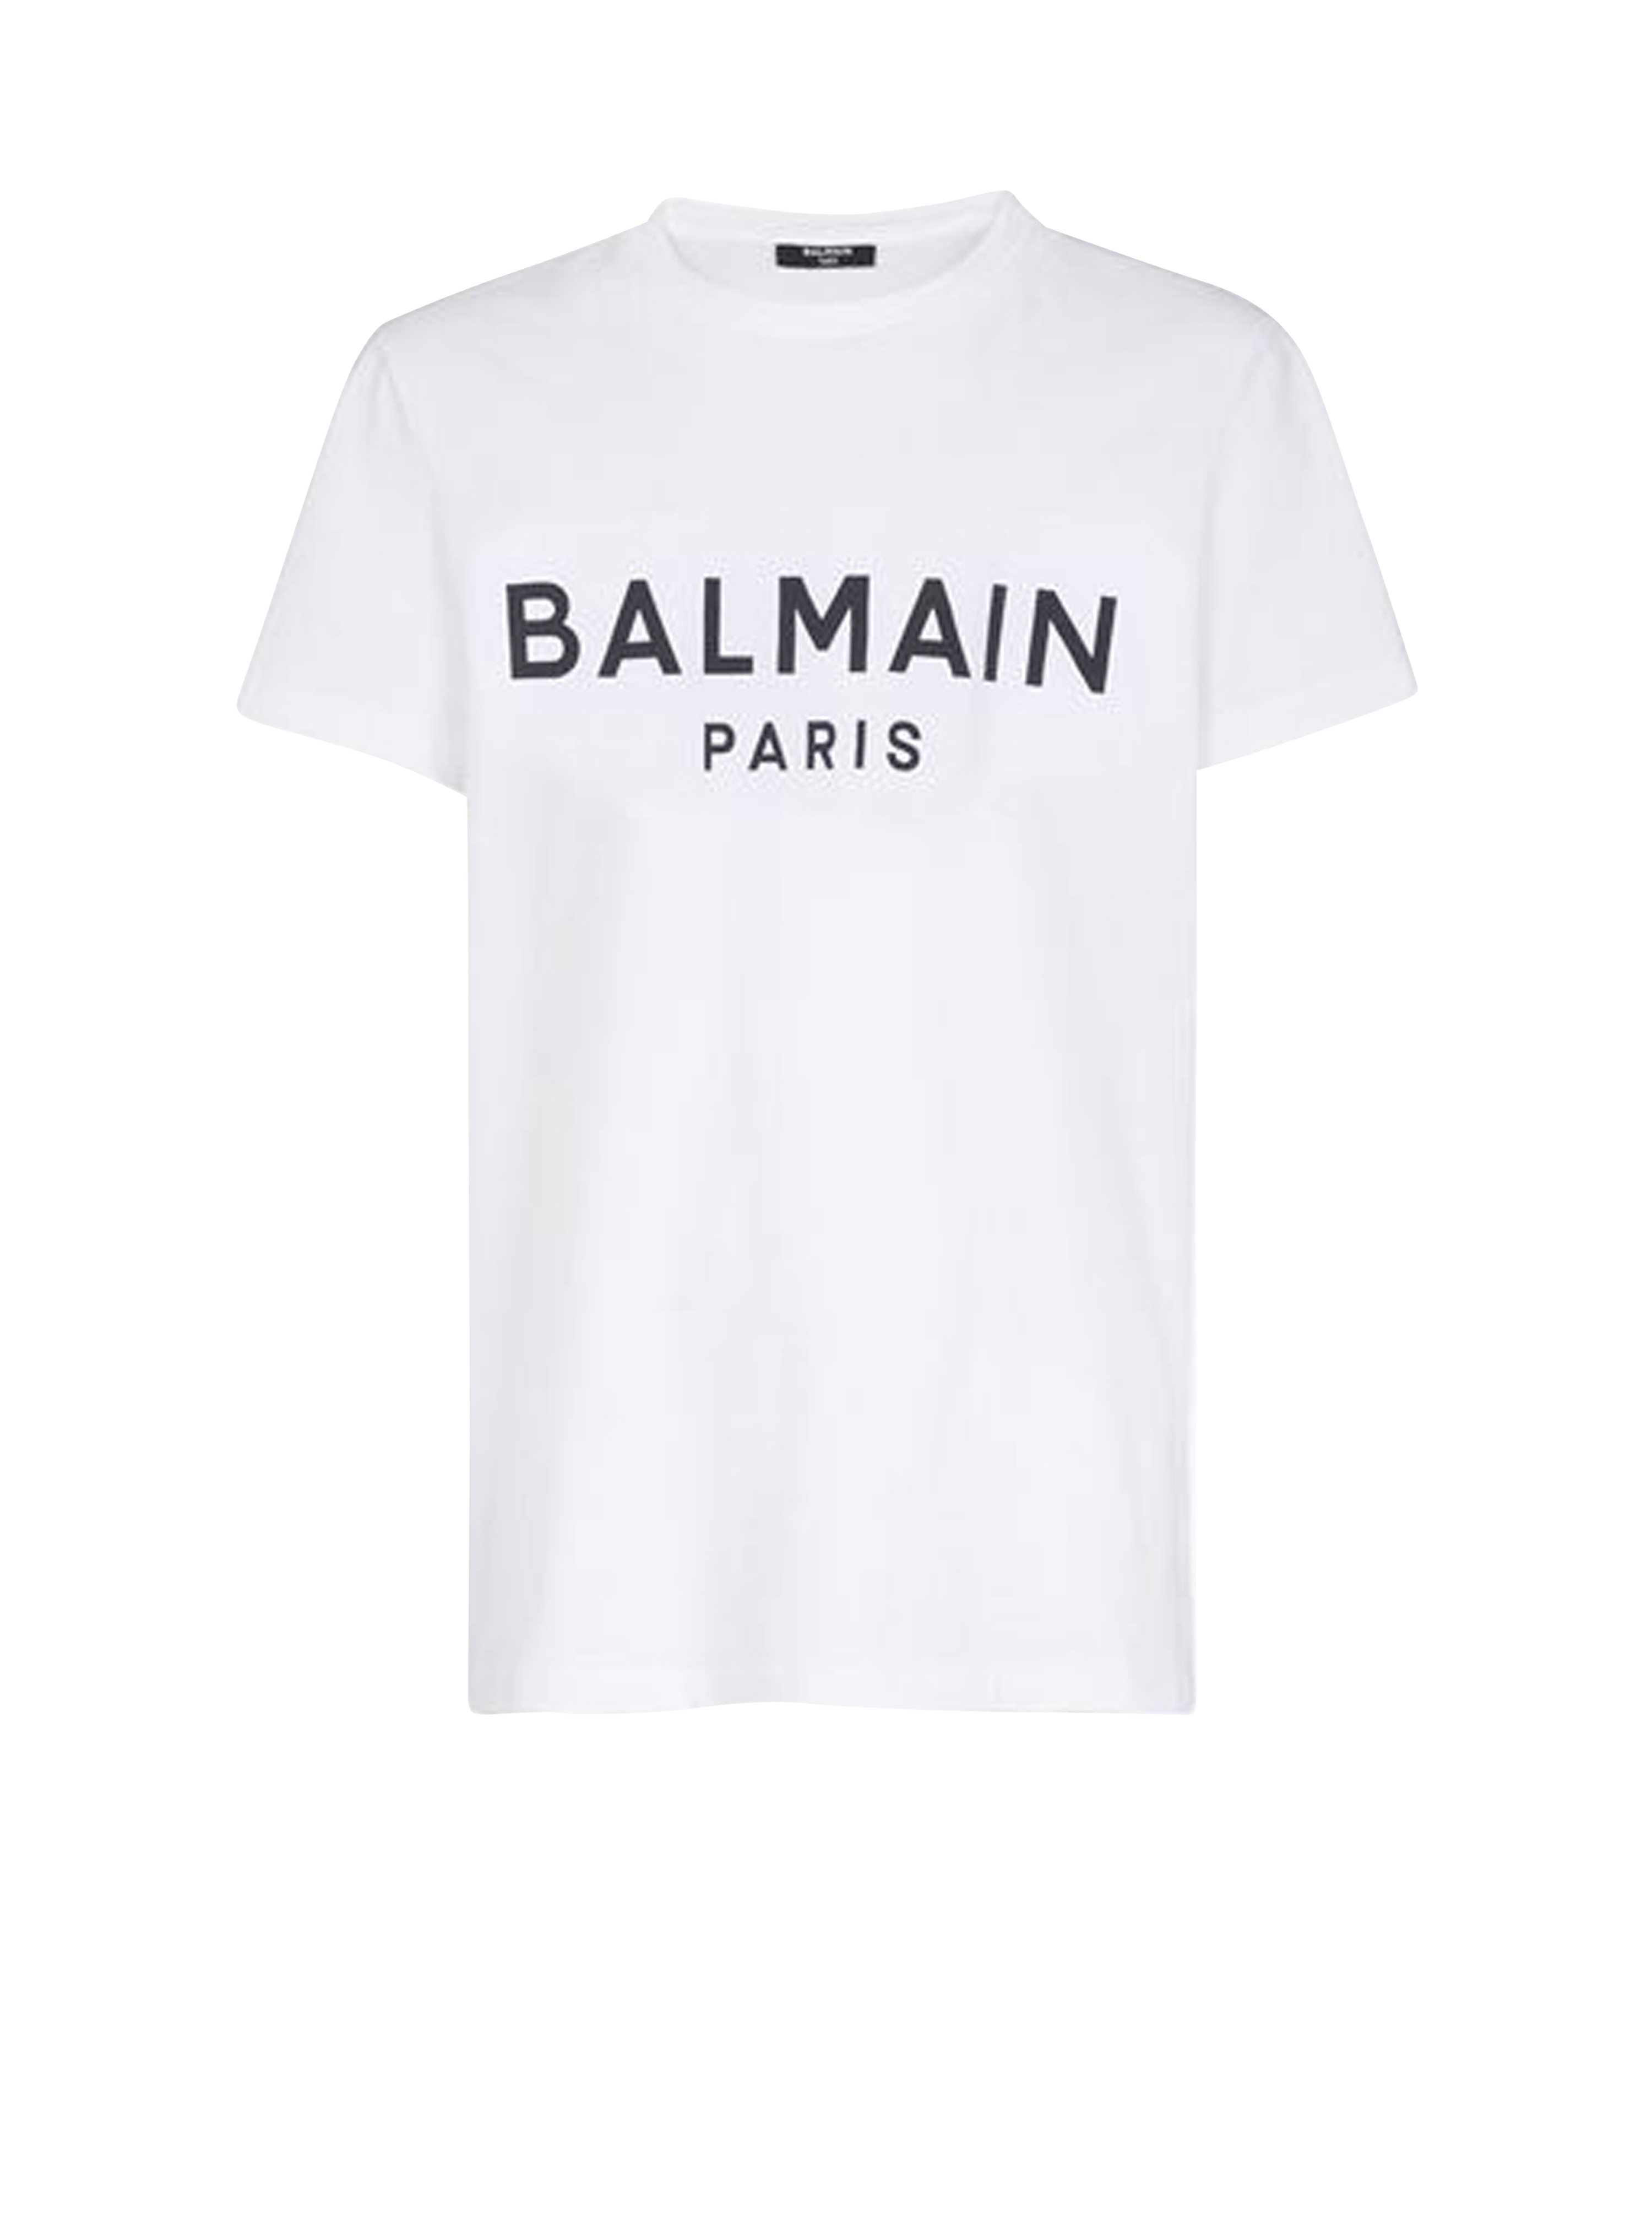 T-shirt in cotone eco-design con logo Balmain floccato, bianco